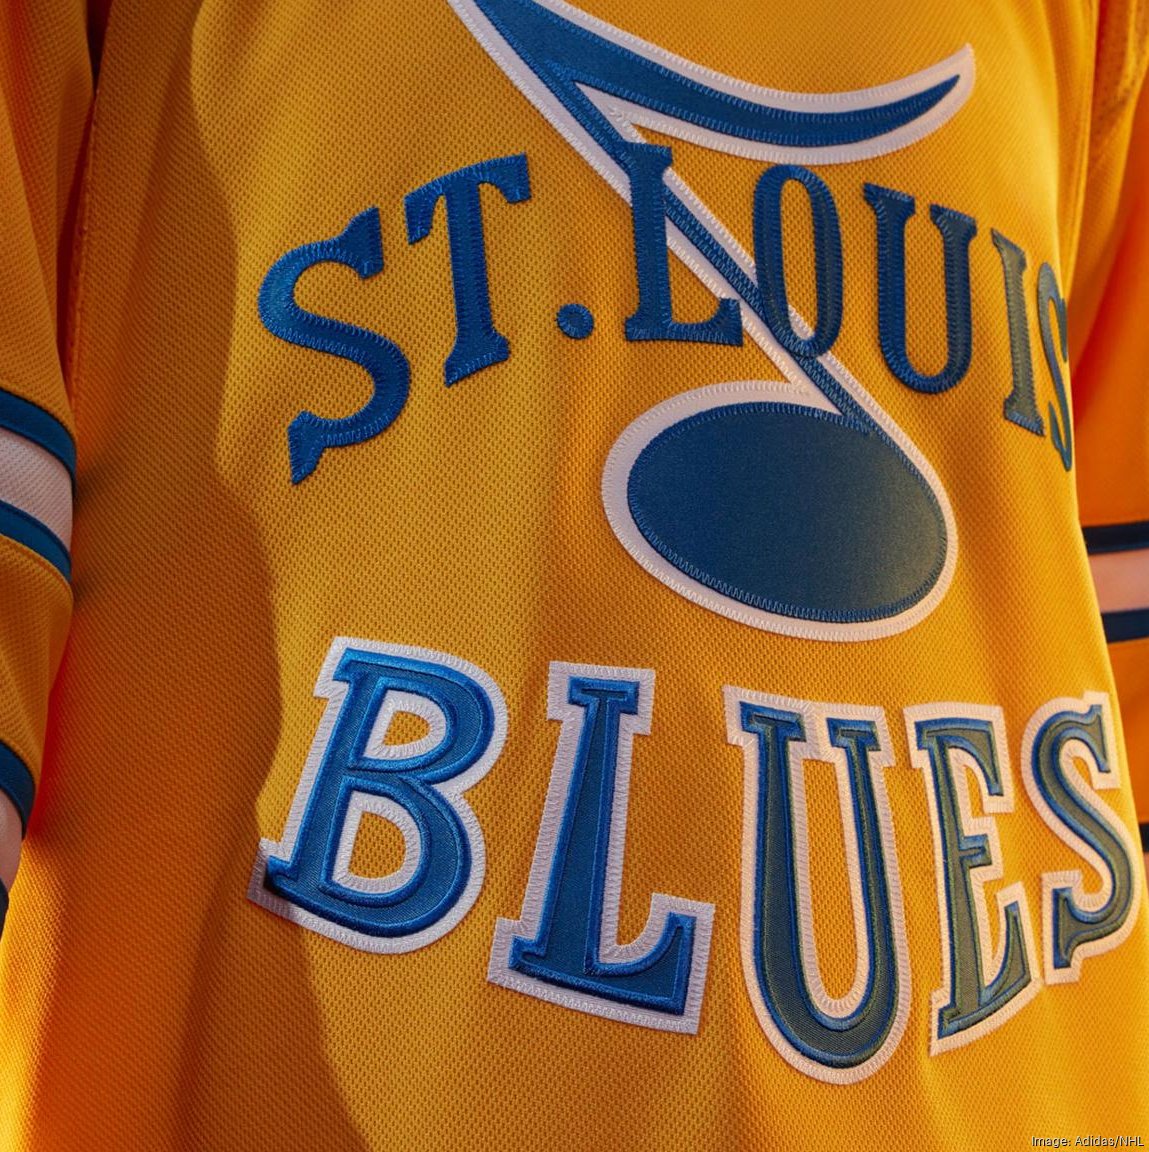 St. Louis Blues Gear, Blues Jerseys, St. Louis Blues Hats, Blues Apparel